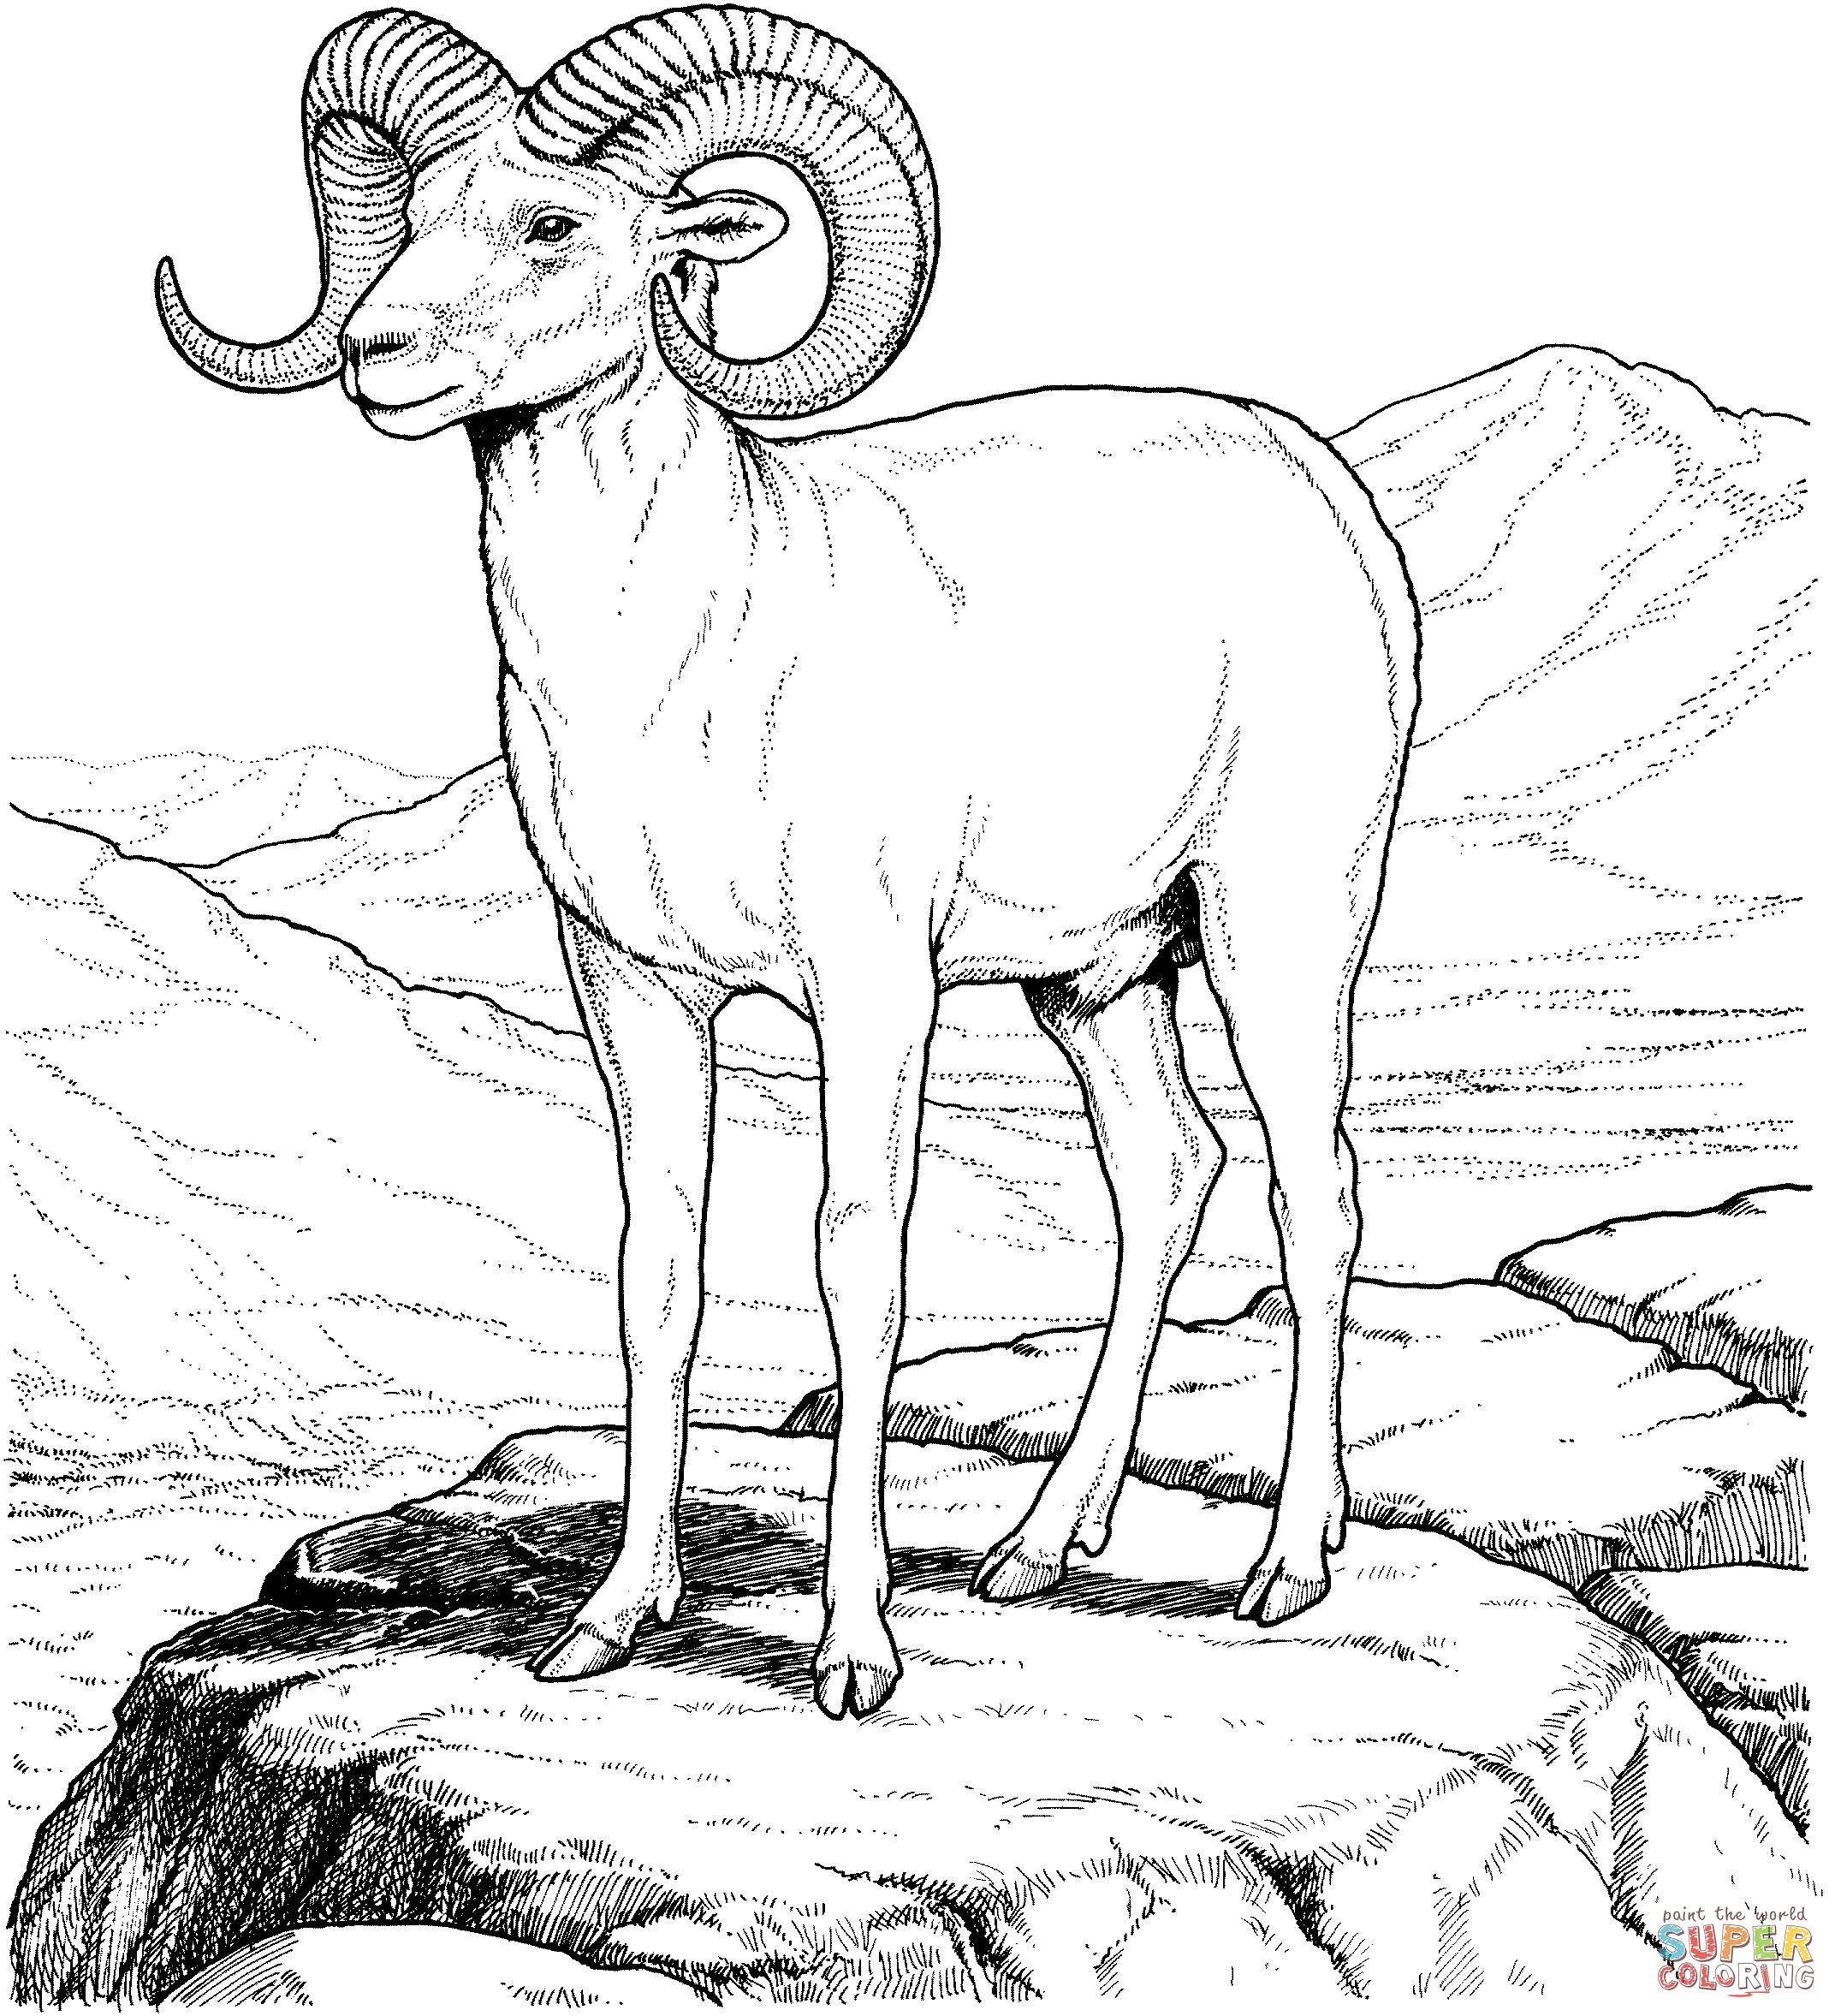   Горный козел, архар, козел с закрученными рогами, горы